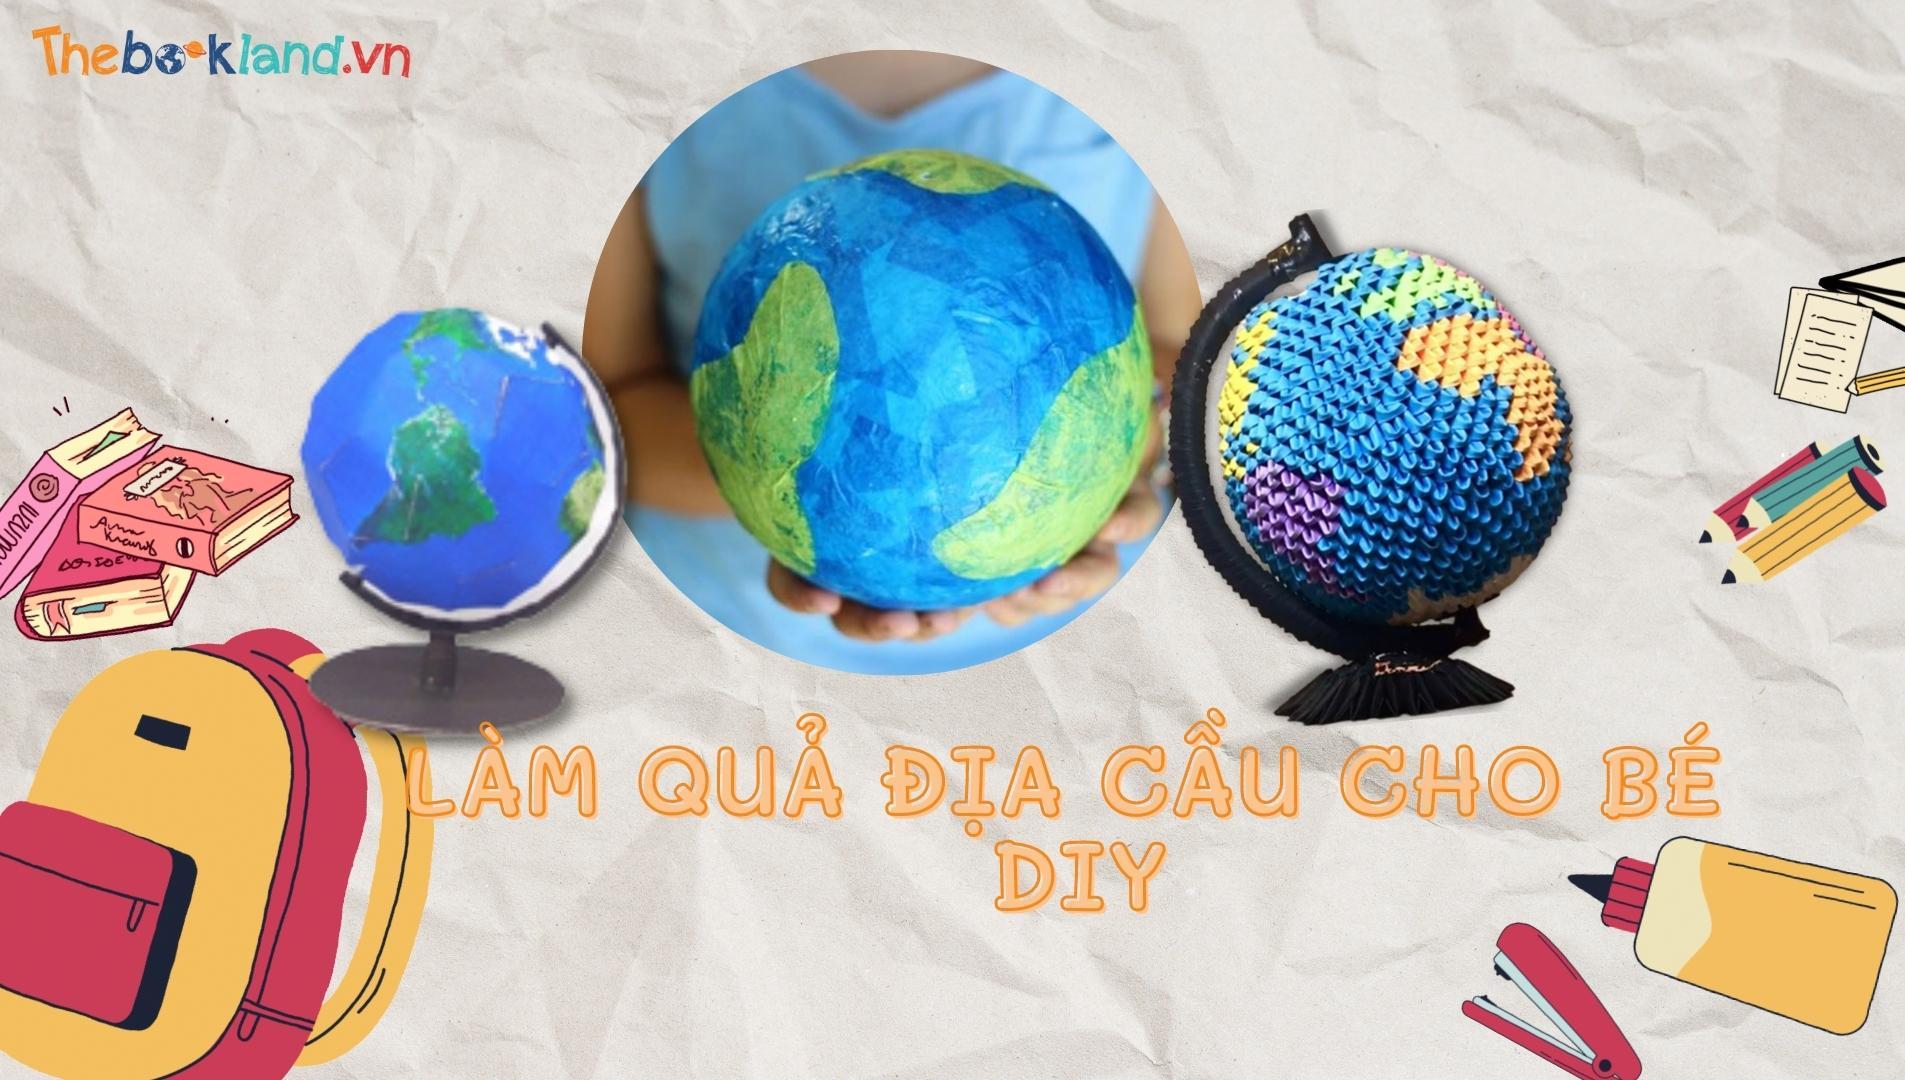 3 Cách làm quả địa cầu bằng giấy cho trẻ DIY đơn giản nhất